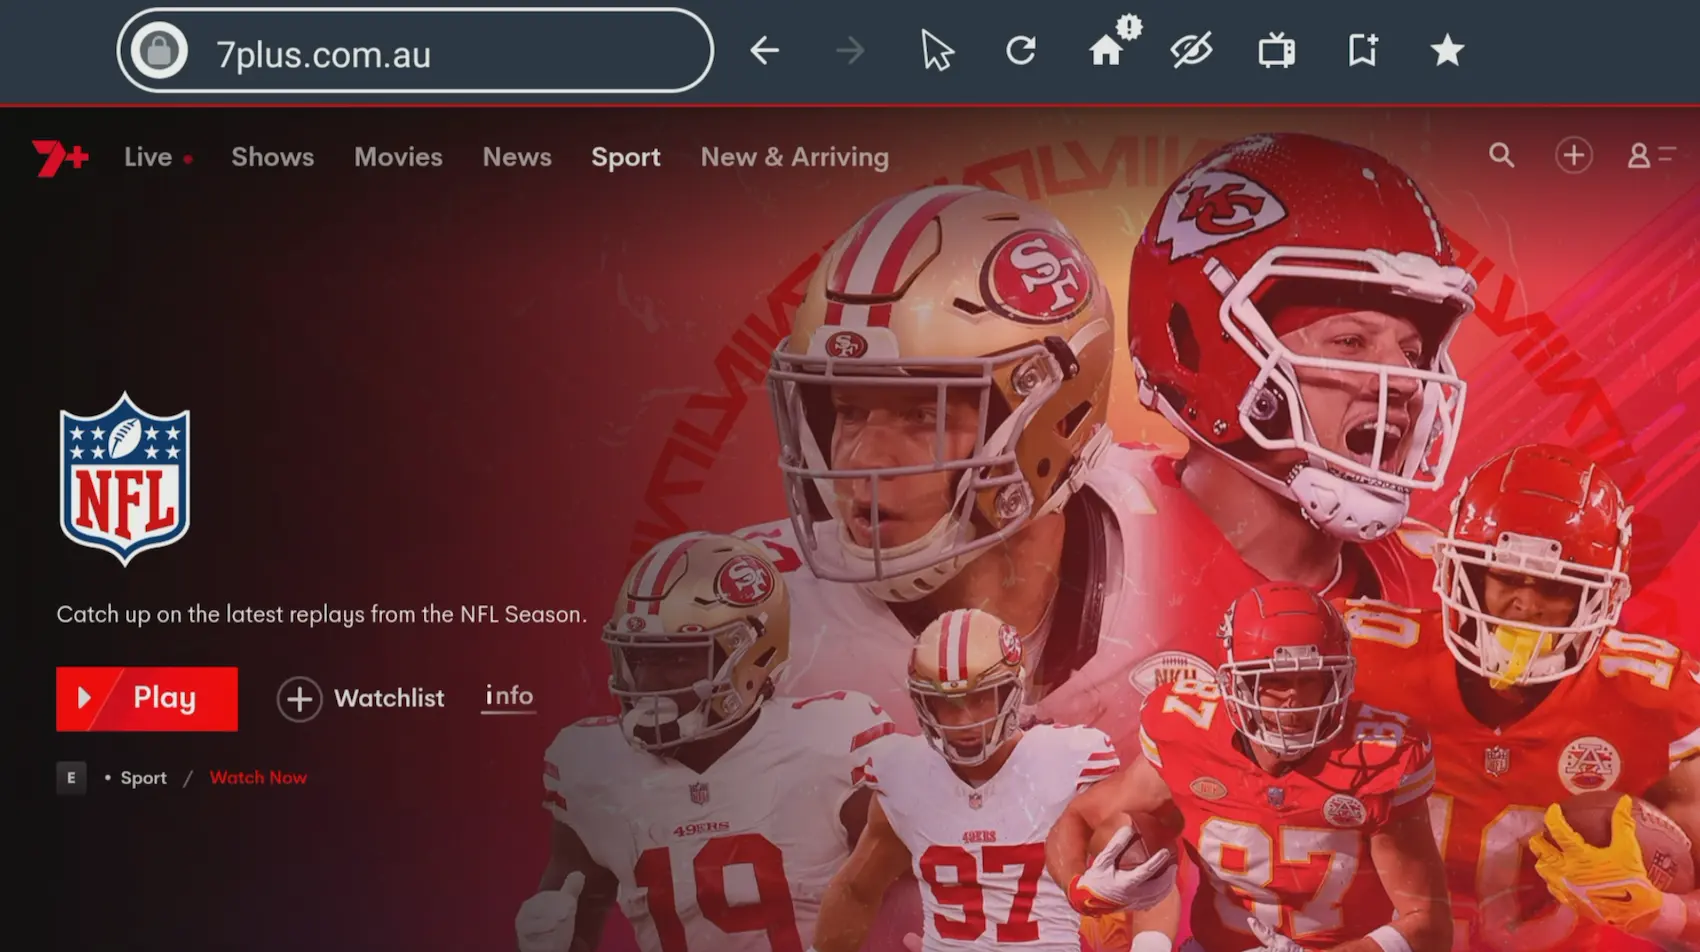 Conteúdo da NFL em 7plus.com.au, sendo acessado por meio do navegador Silk integrado no Fire TV. Apresentando uma colagem de jogadores de futebol americano do San Francisco 49ers e do Kansas City Chiefs em poses de ação, com foco nos zagueiros no centro. O logotipo da NFL é exibido com destaque.